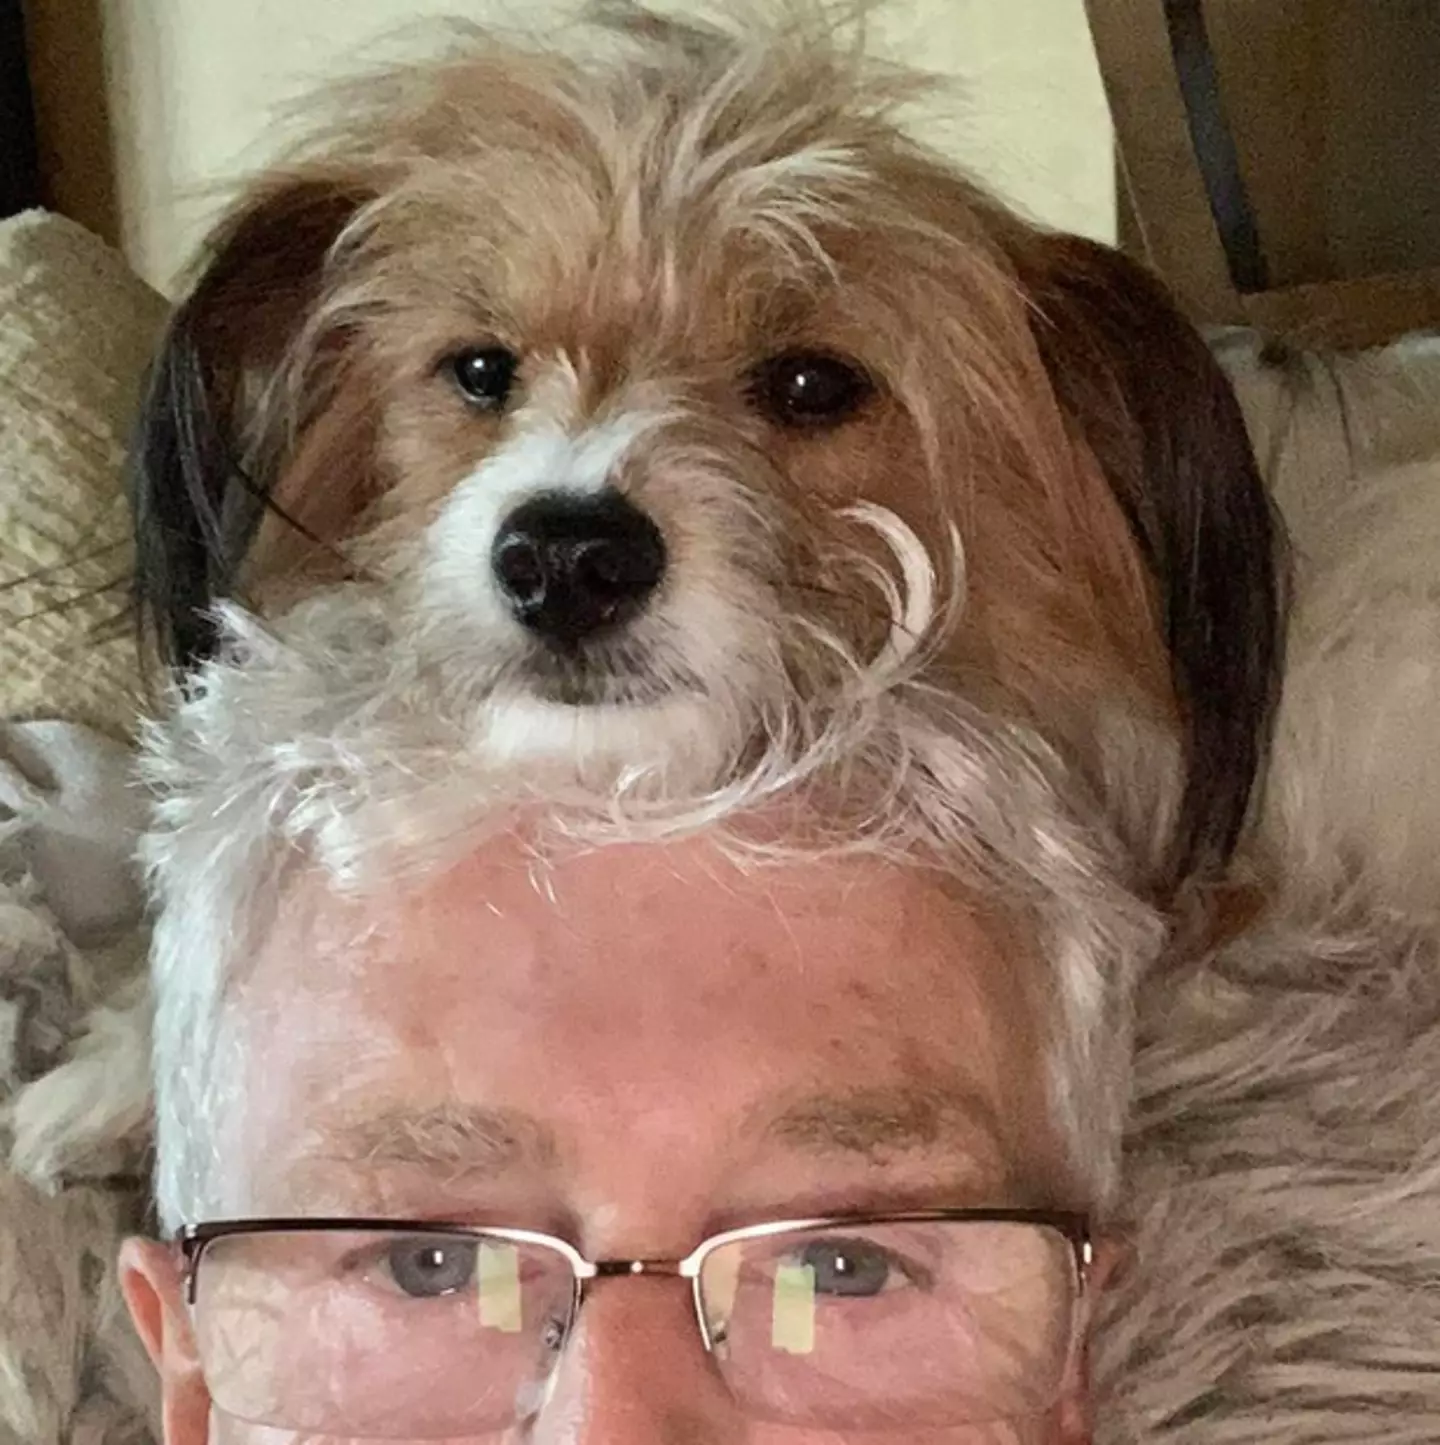 Paul O'Grady with his dog Arfur.